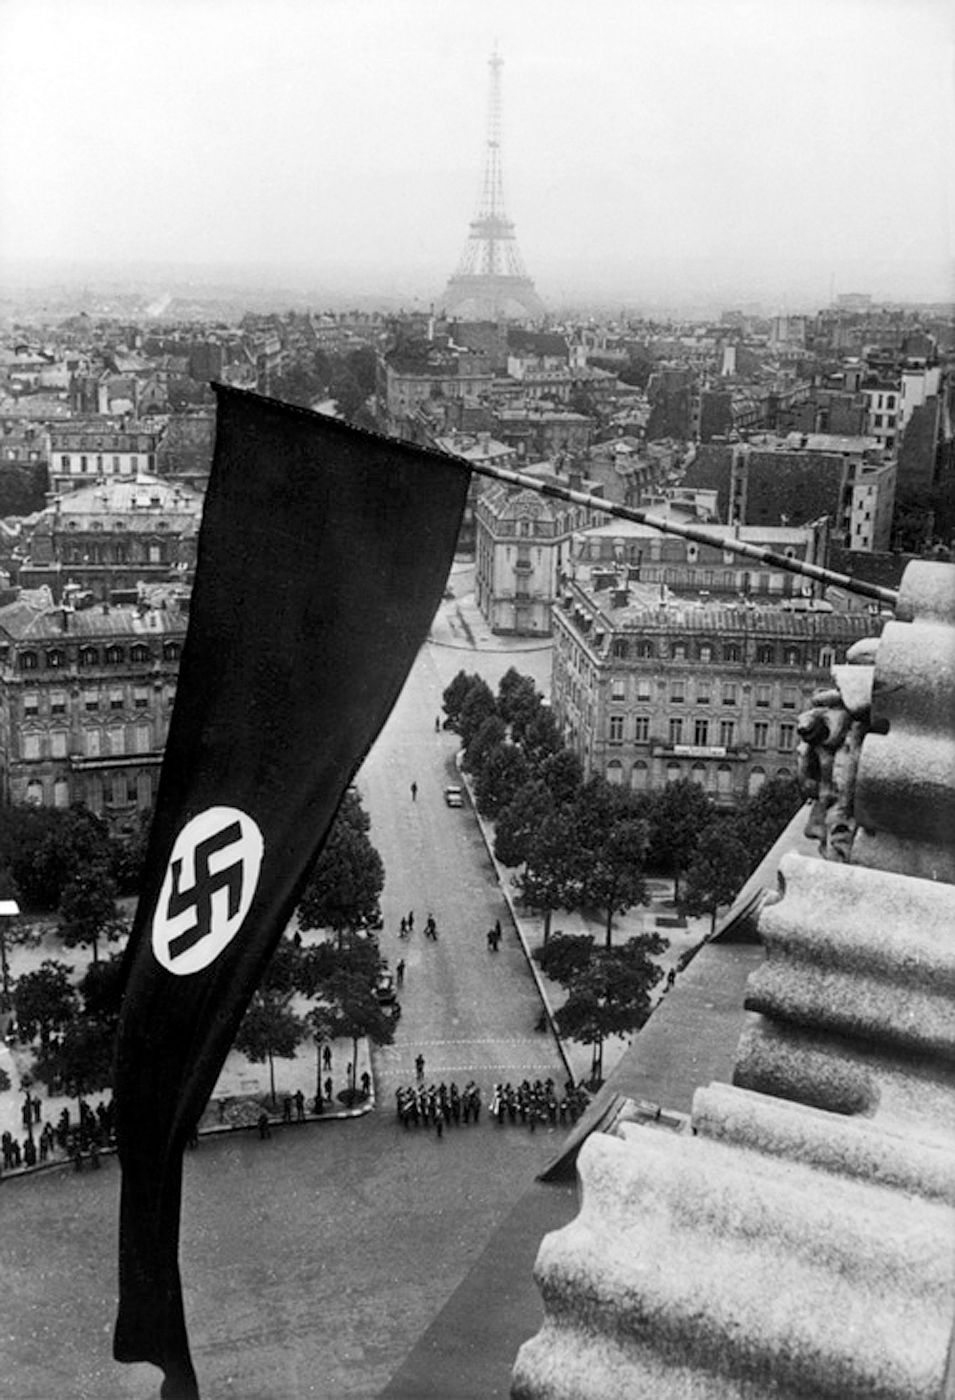 Nice: la préfecture arbore un drapeau nazi et doit s'expliquer